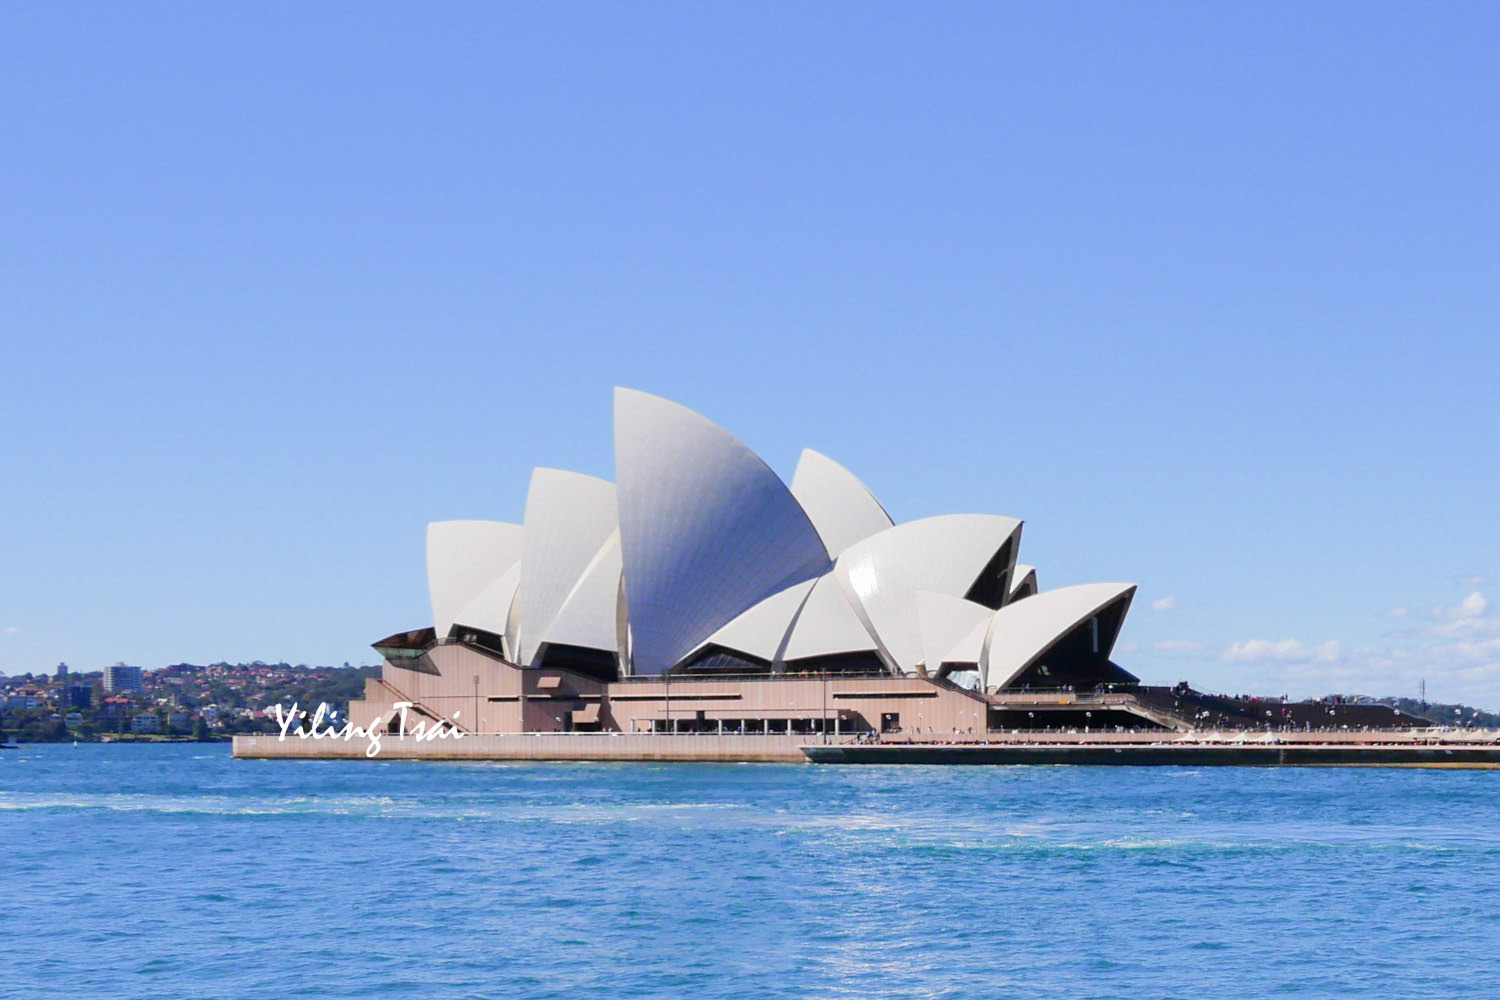 澳洲雪梨歌劇院 Sydney Opera House 內部導覽行程、歌劇院拍照攻略